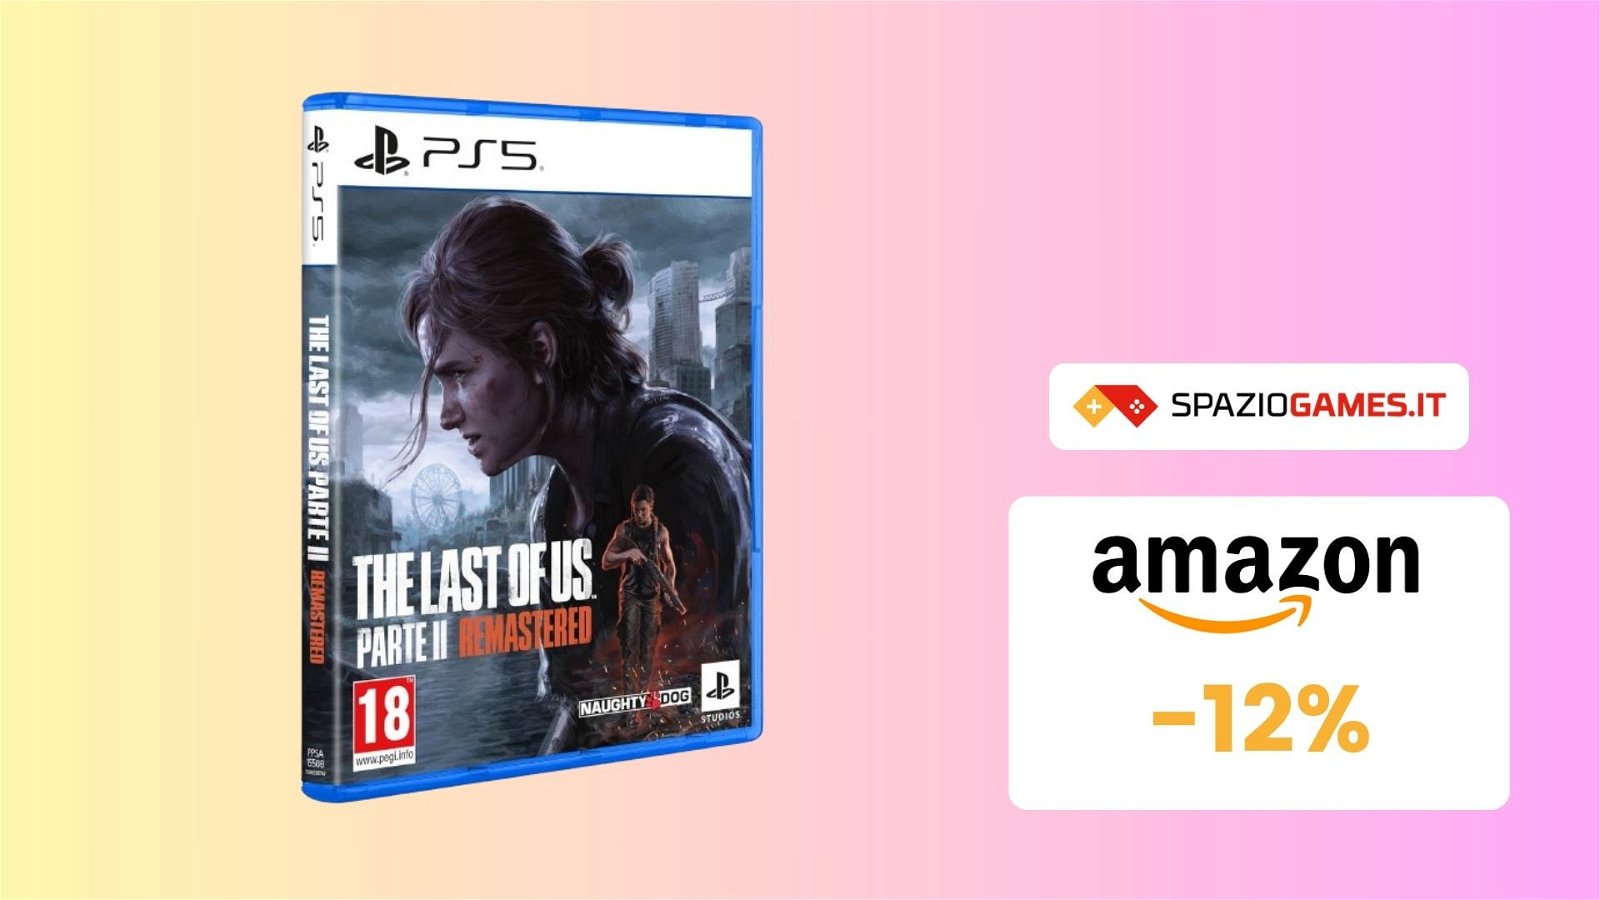 Prezzo BOMBA su The Last Of Us Parte II Remastered! Lo paghi SOLO 45€!